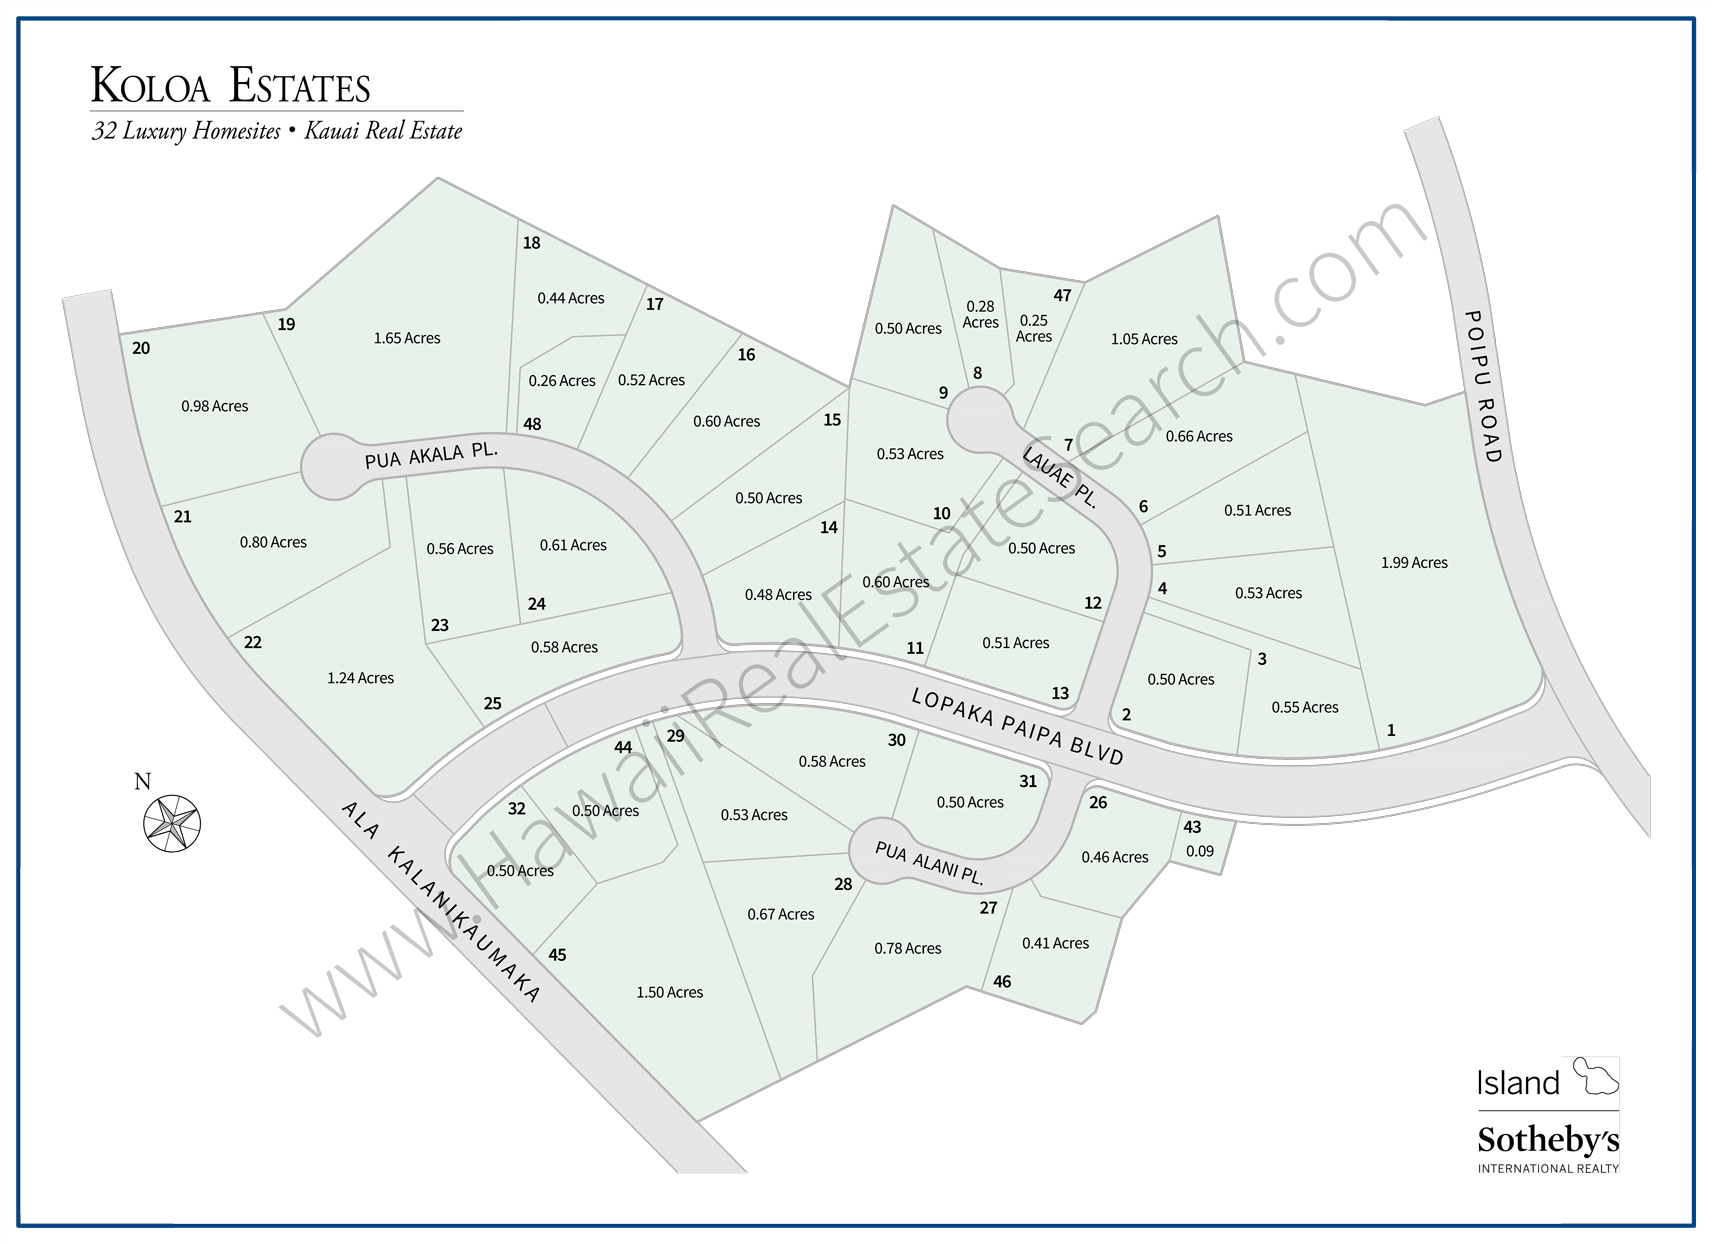 Koloa Estates Map